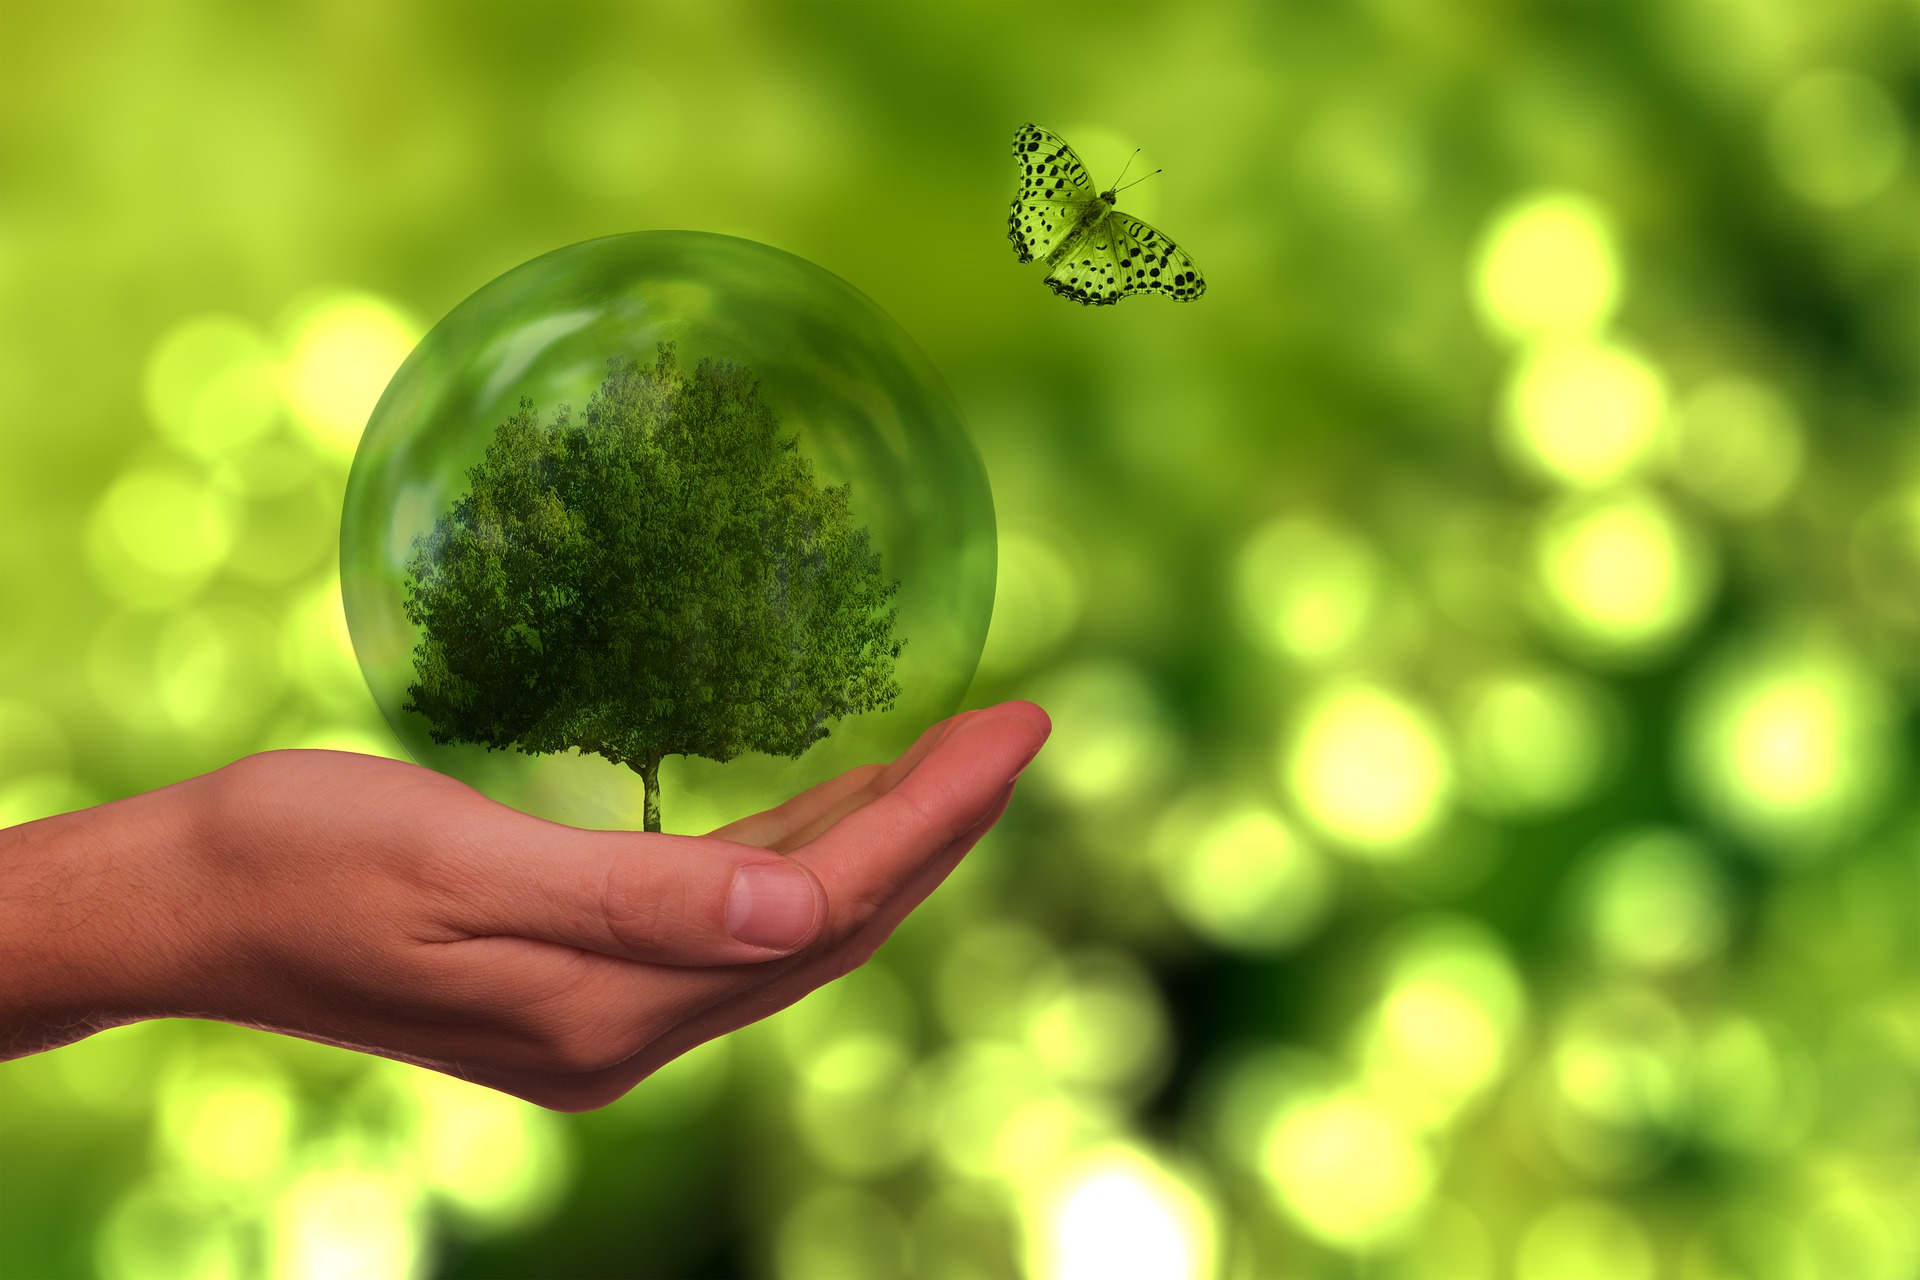 Zu sehen sind vor verschwommenem grünem Hintergrund ein Baum eine transparente Kugel oder Blase, die von einer Hand gehalten wird und ein grüner Schmetterling